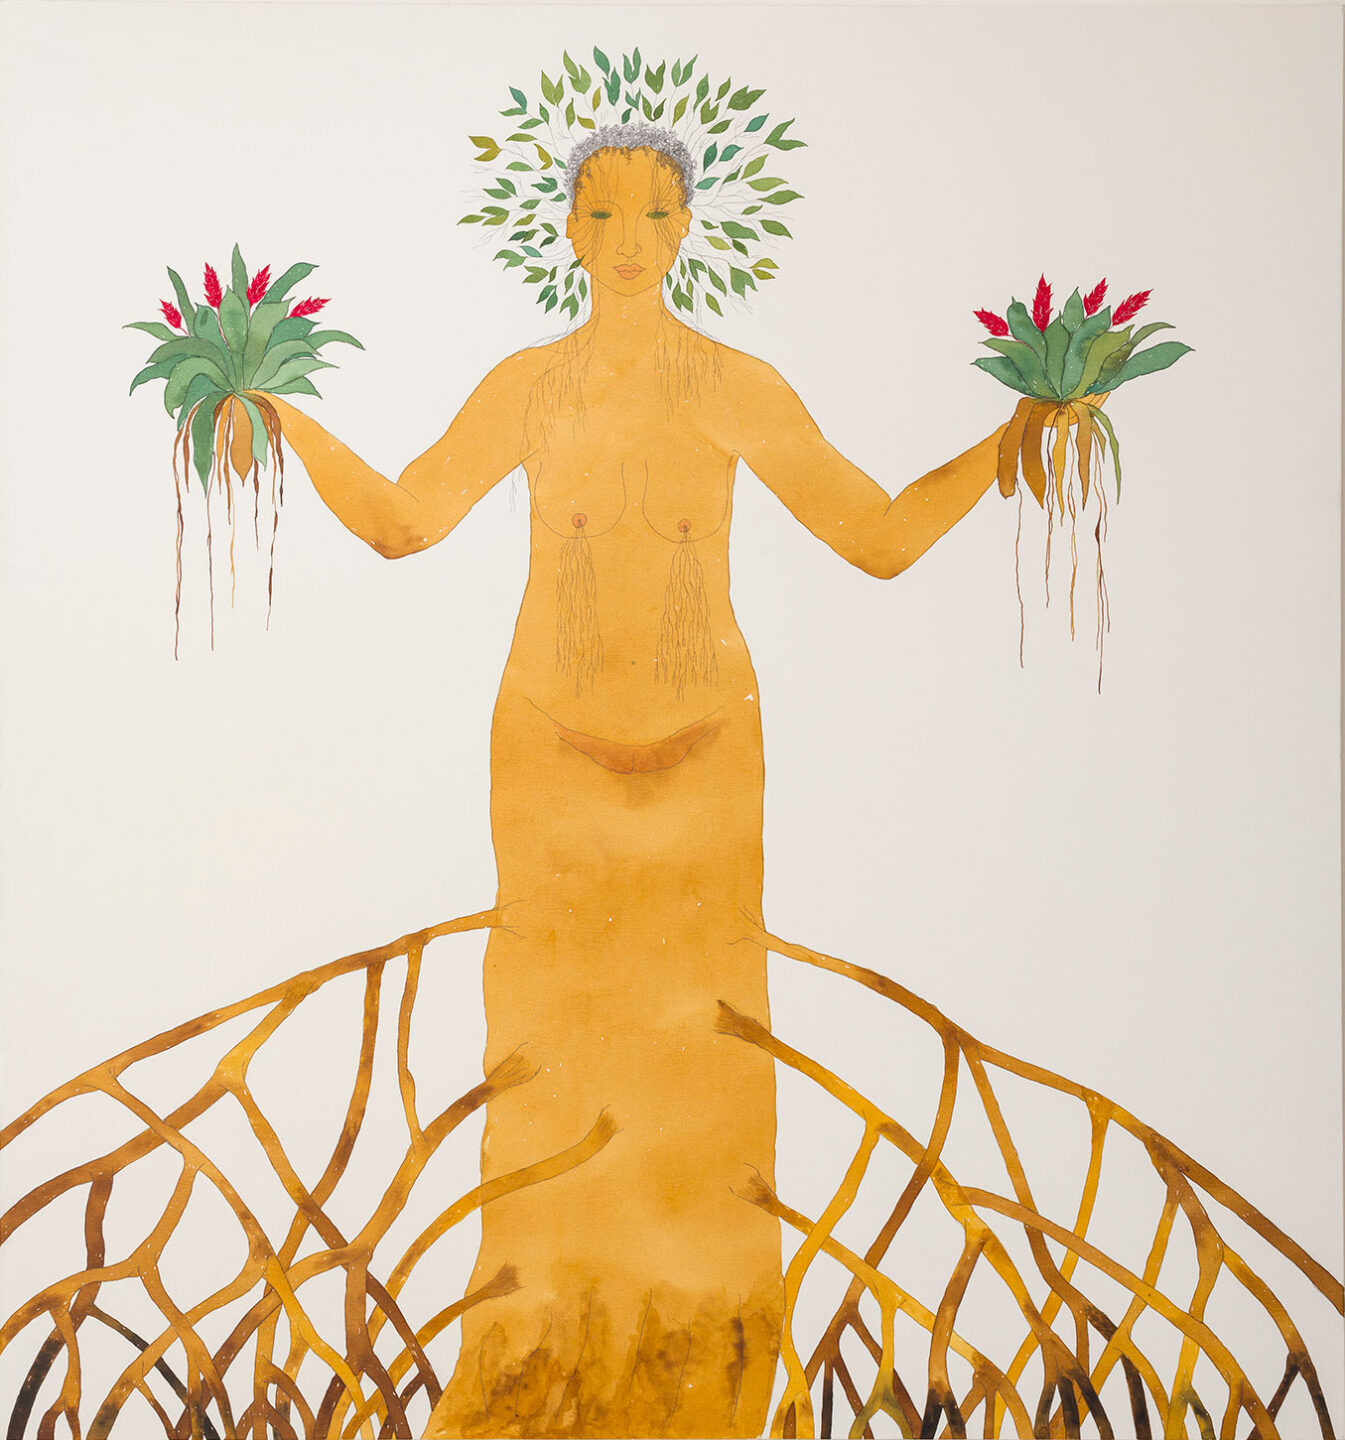 Pintura em aquarela de uma mulher de cujas pernas saem raízes como num mangue, ela segura duas plantas nas mãos e usa uma coroa de plantas.